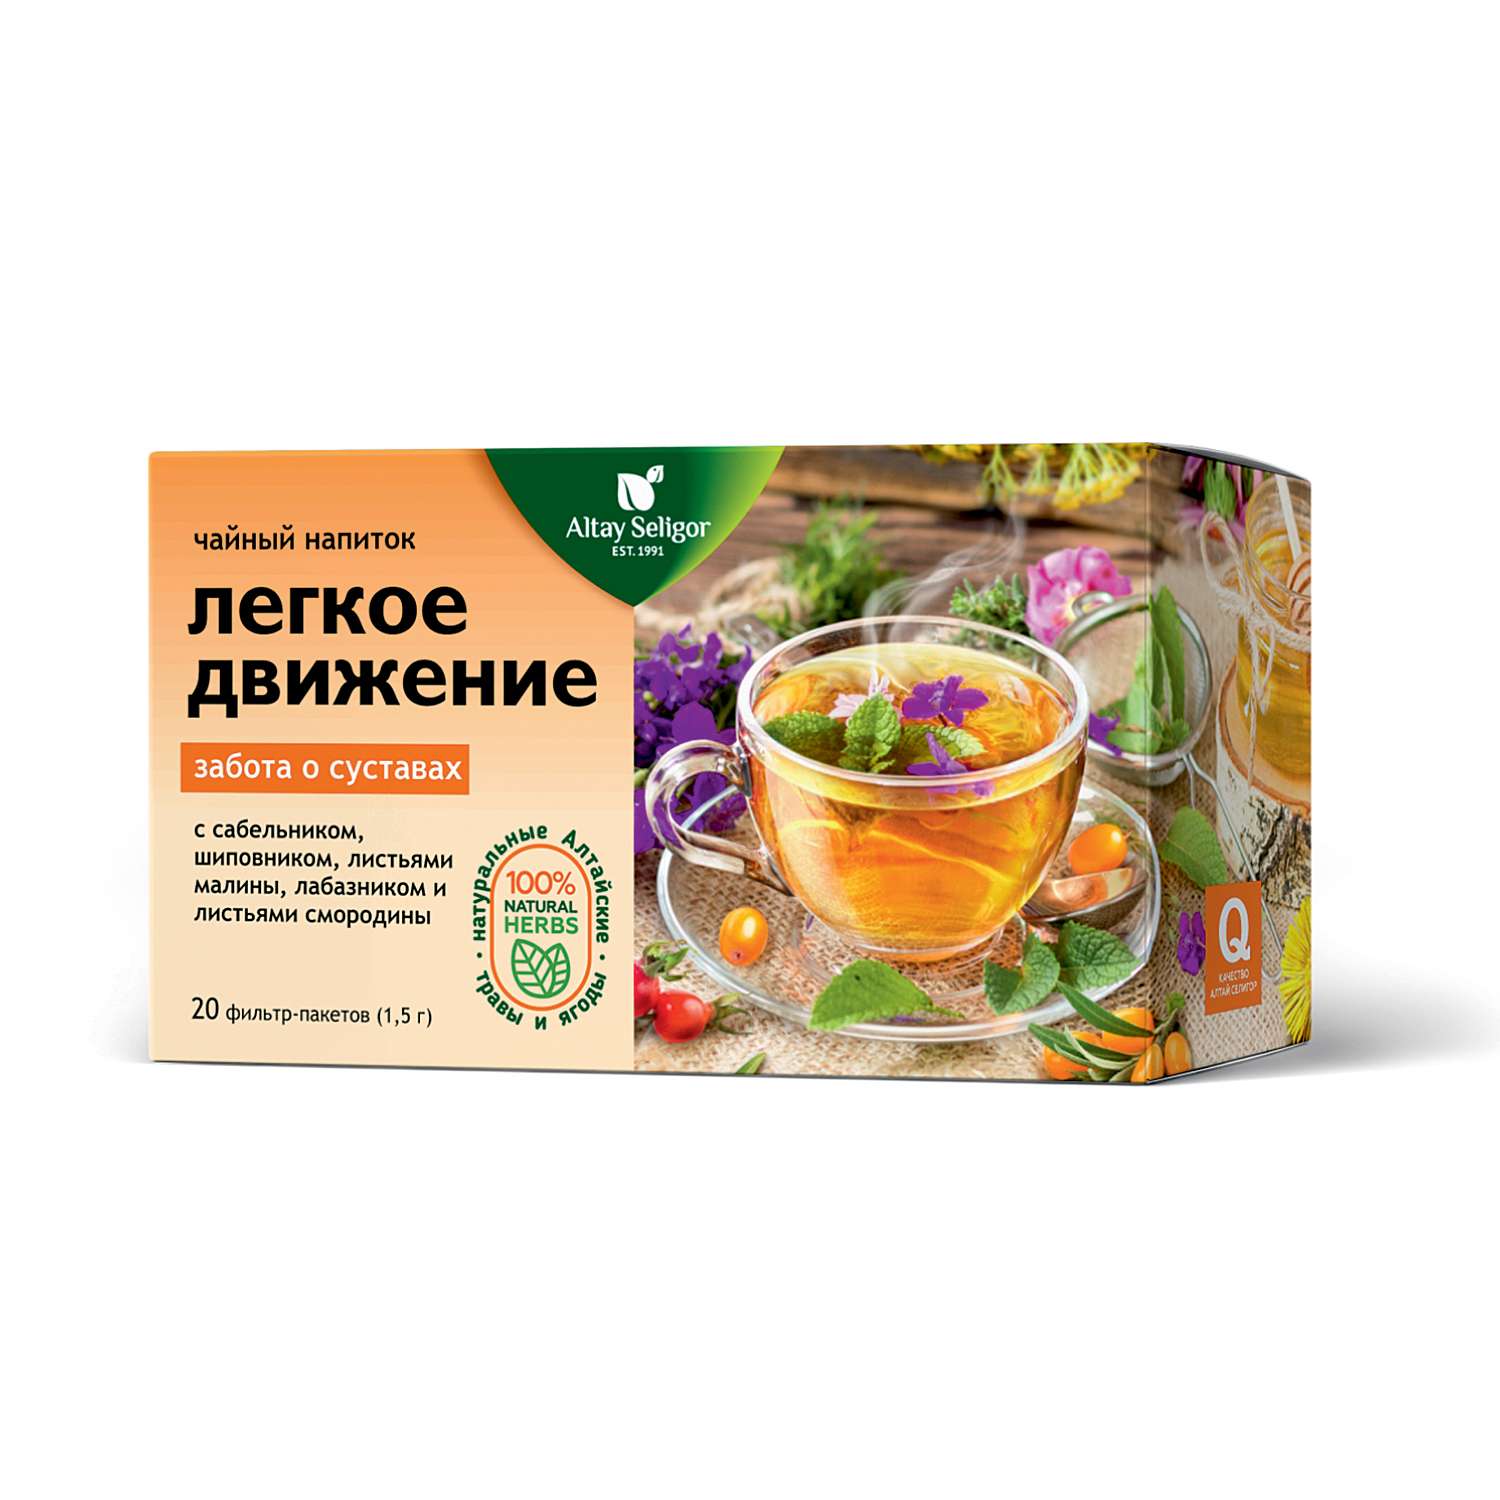 Напиток чайный Алтай-Селигор Легкое движение суставной 20пакетиков - фото 1